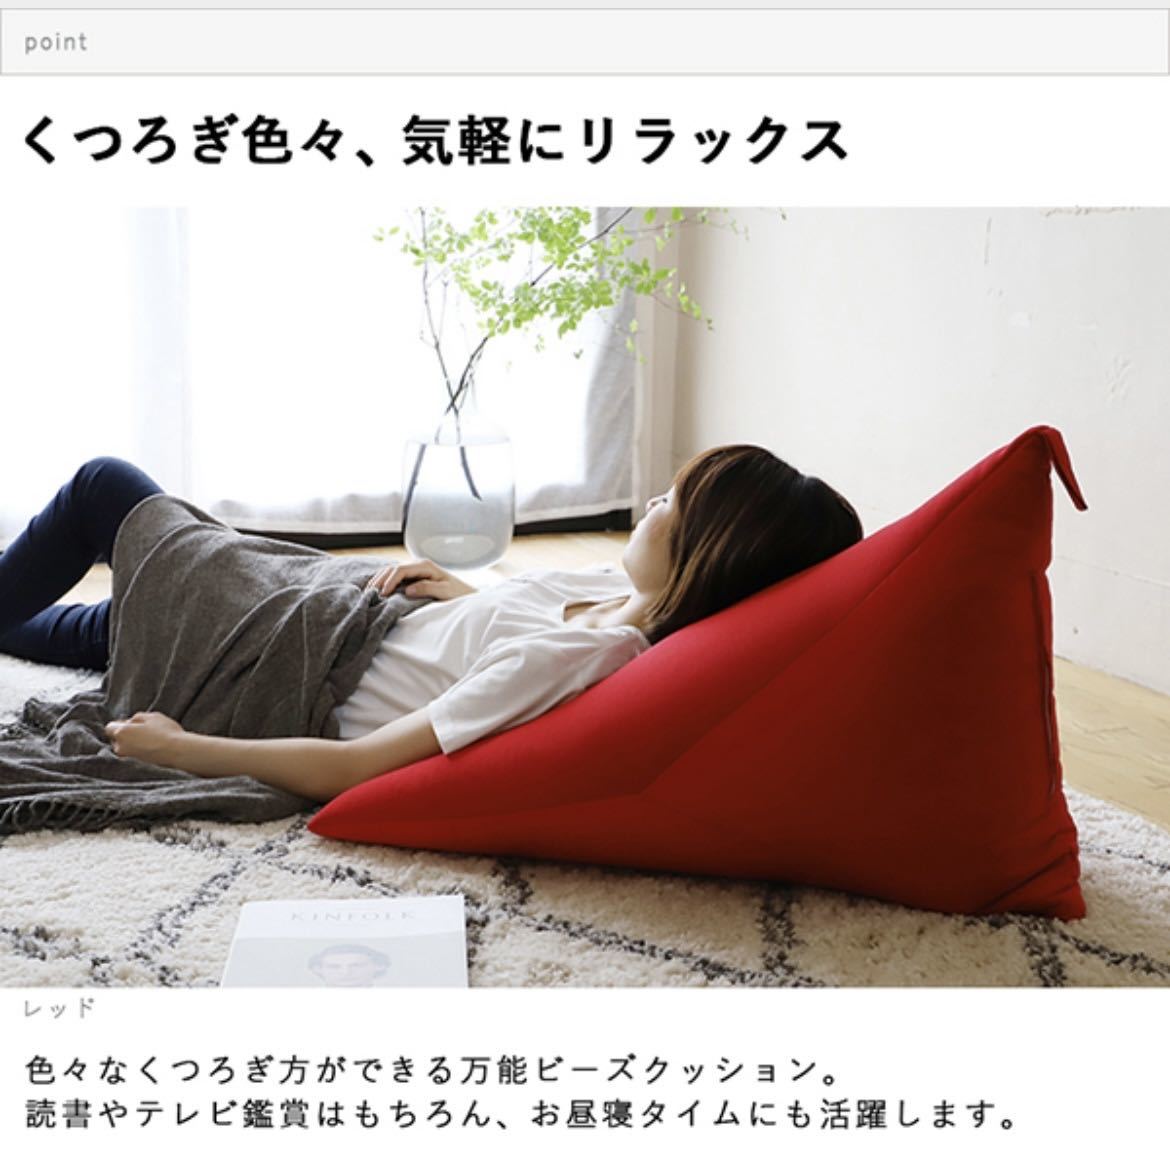  новый товар бисер подушка сделано в Японии низкий диван Северная Европа человек .dame. делать чтение .. соус сиденье "zaisu" текстильный домашнее животное ребенок низкий стол. одиночный подушка 